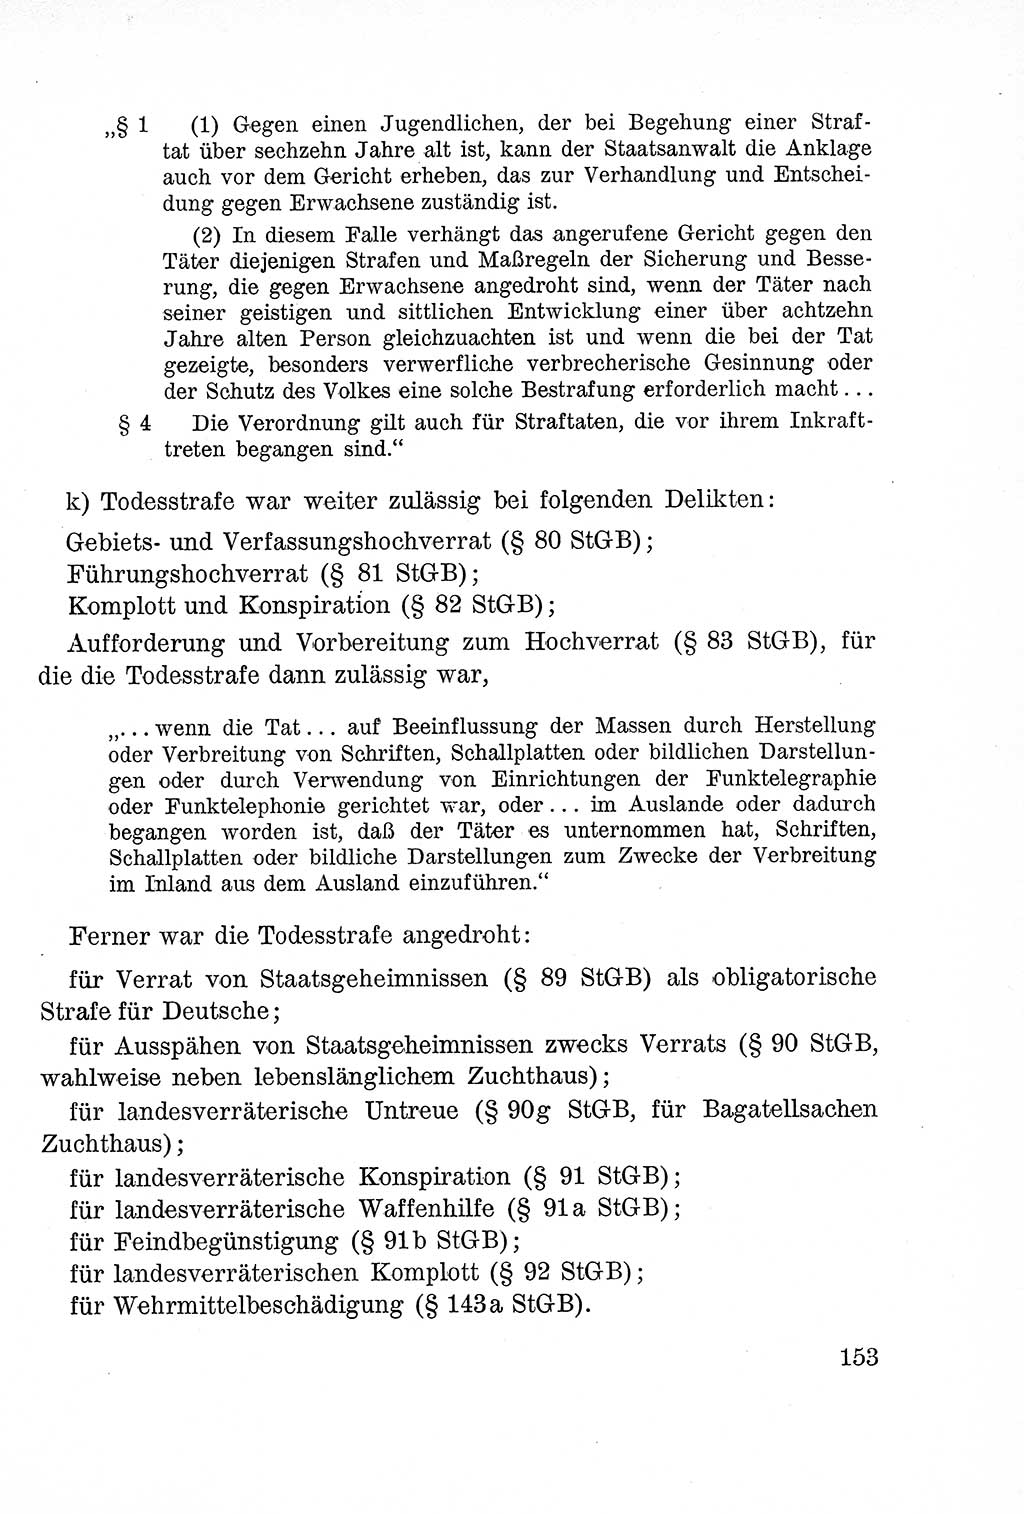 Lehrbuch des Strafrechts der Deutschen Demokratischen Republik (DDR), Allgemeiner Teil 1957, Seite 153 (Lb. Strafr. DDR AT 1957, S. 153)